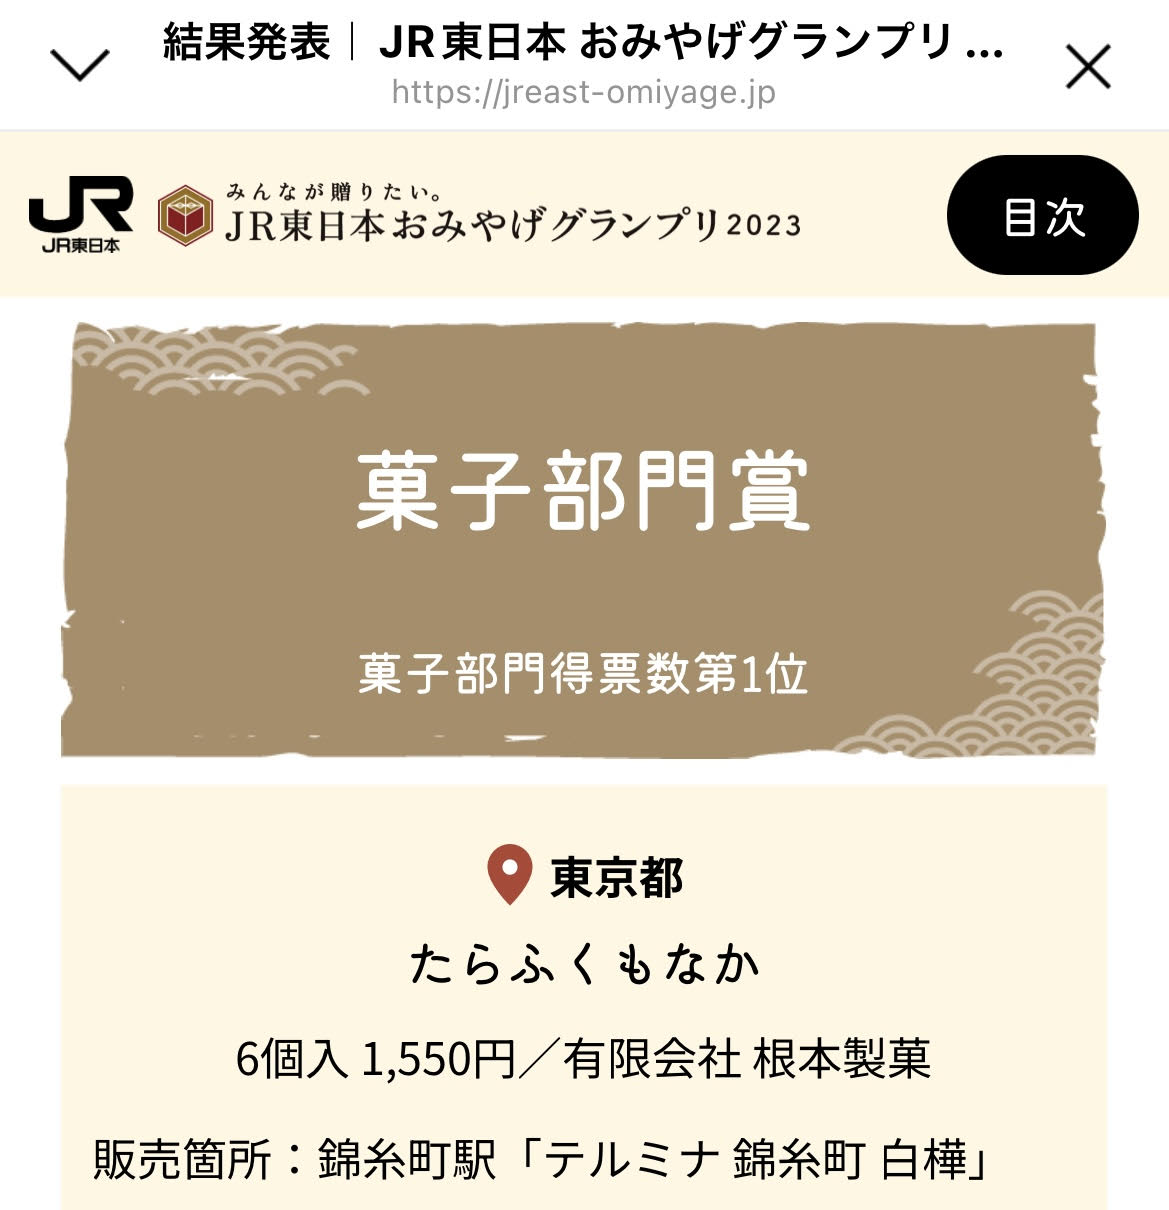 白樺 錦糸町の和菓子司 オフィシャルサイト Shirakaba